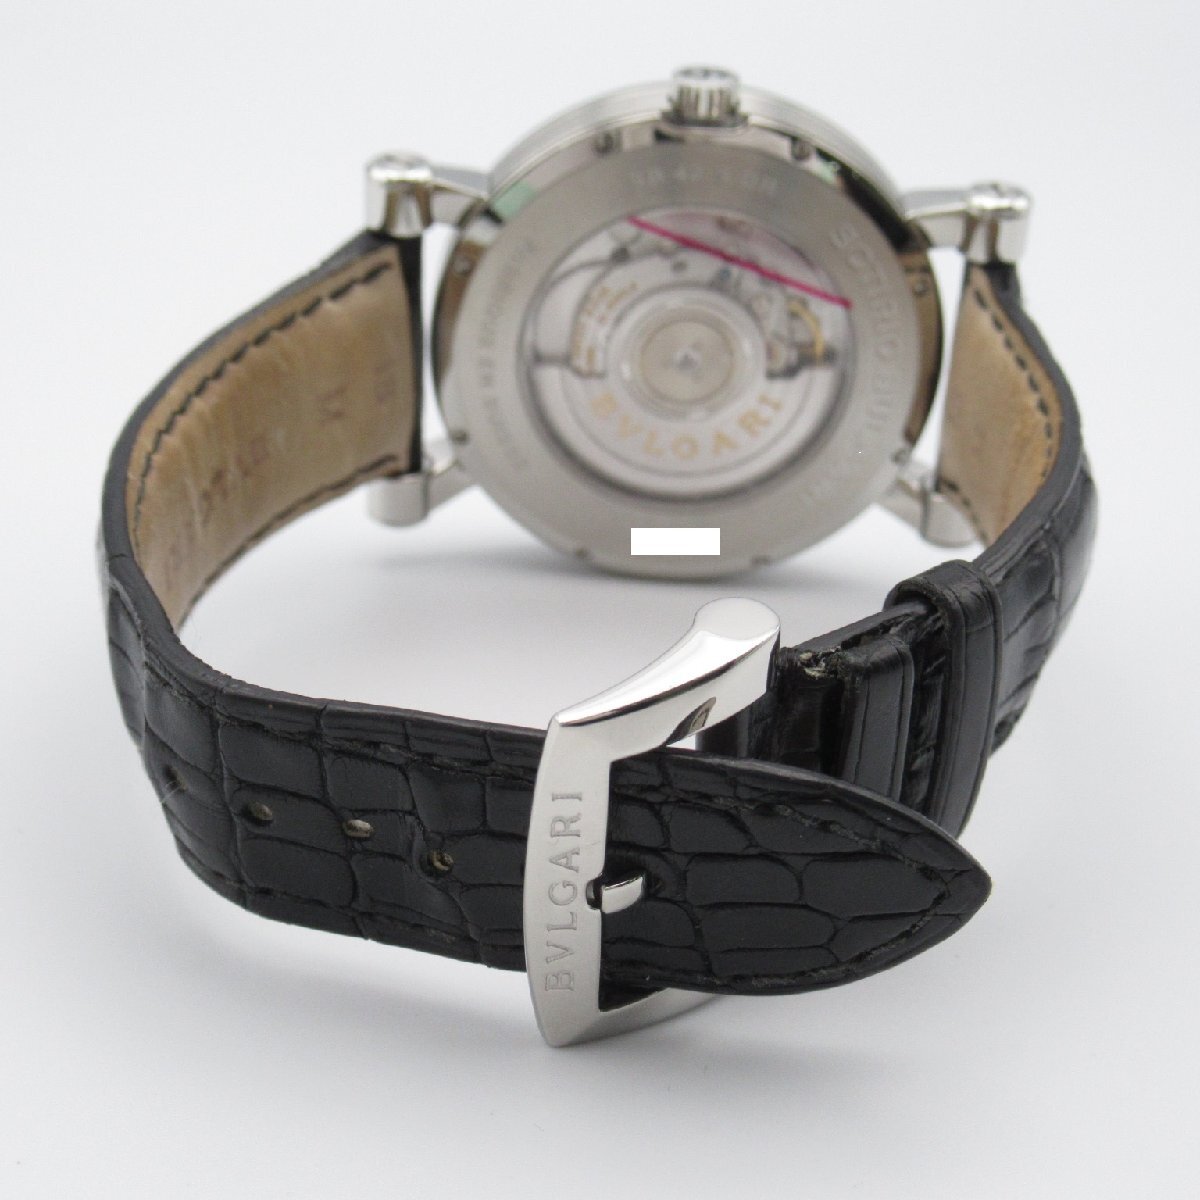  BVLGARY soti rio BVLGARY Retrograde бренд off BVLGARI нержавеющая сталь наручные часы SS/ черный ko кожа б/у мужской 